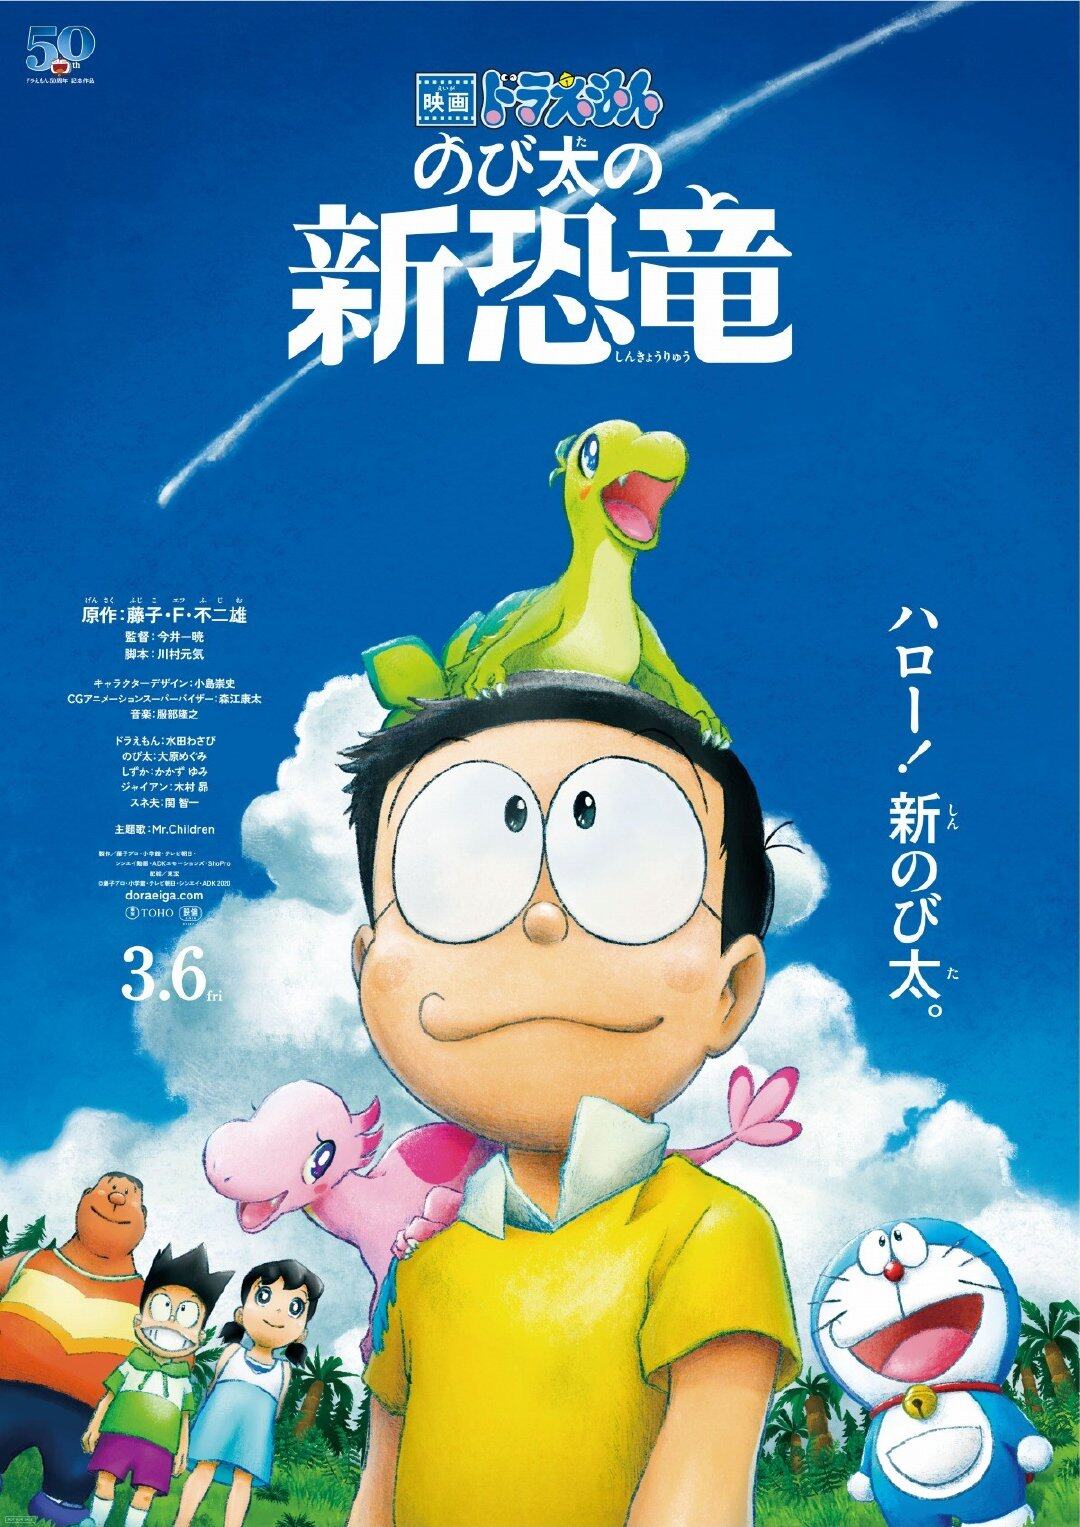 DVD Japan Cartoon Movie Doraemon The Movie: Nobita's New Dinosour -  Movieland682786 | Lazada